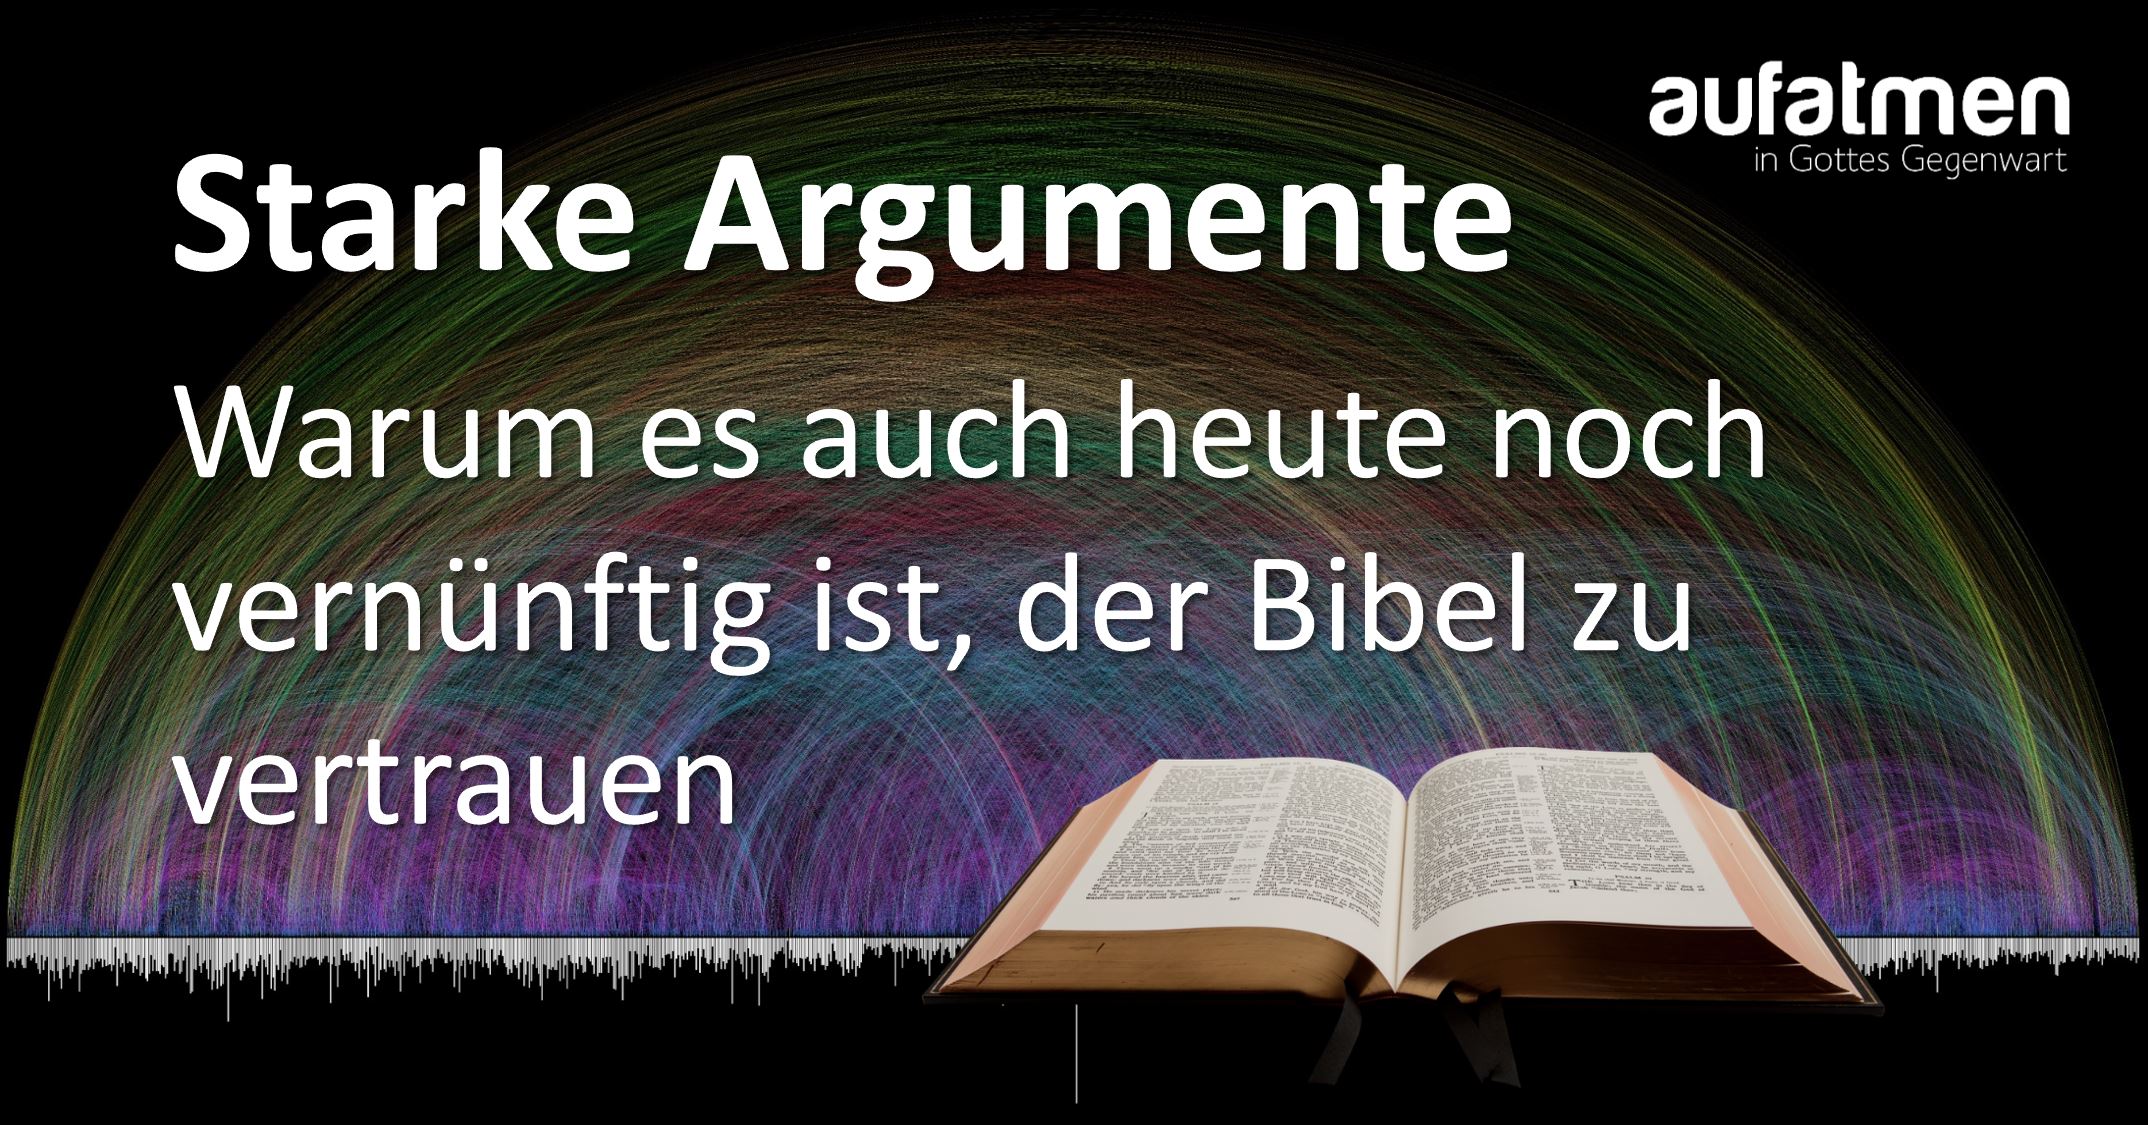 Starke Argumente – Warum es auch heute noch vernünftig ist, der Bibel zu vertrauen